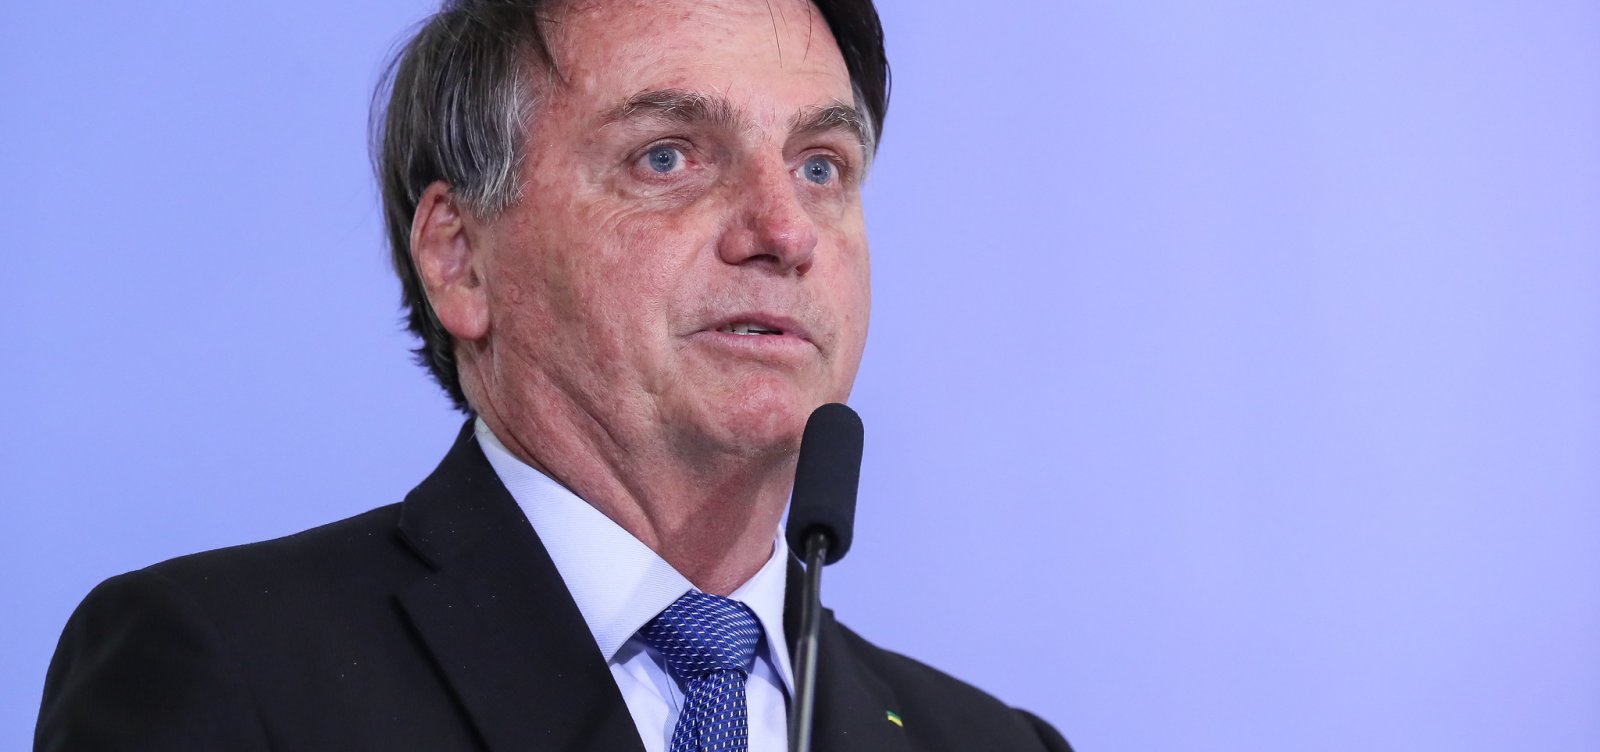 Assista: Com Covid-19, Bolsonaro tira máscara em entrevista coletiva 